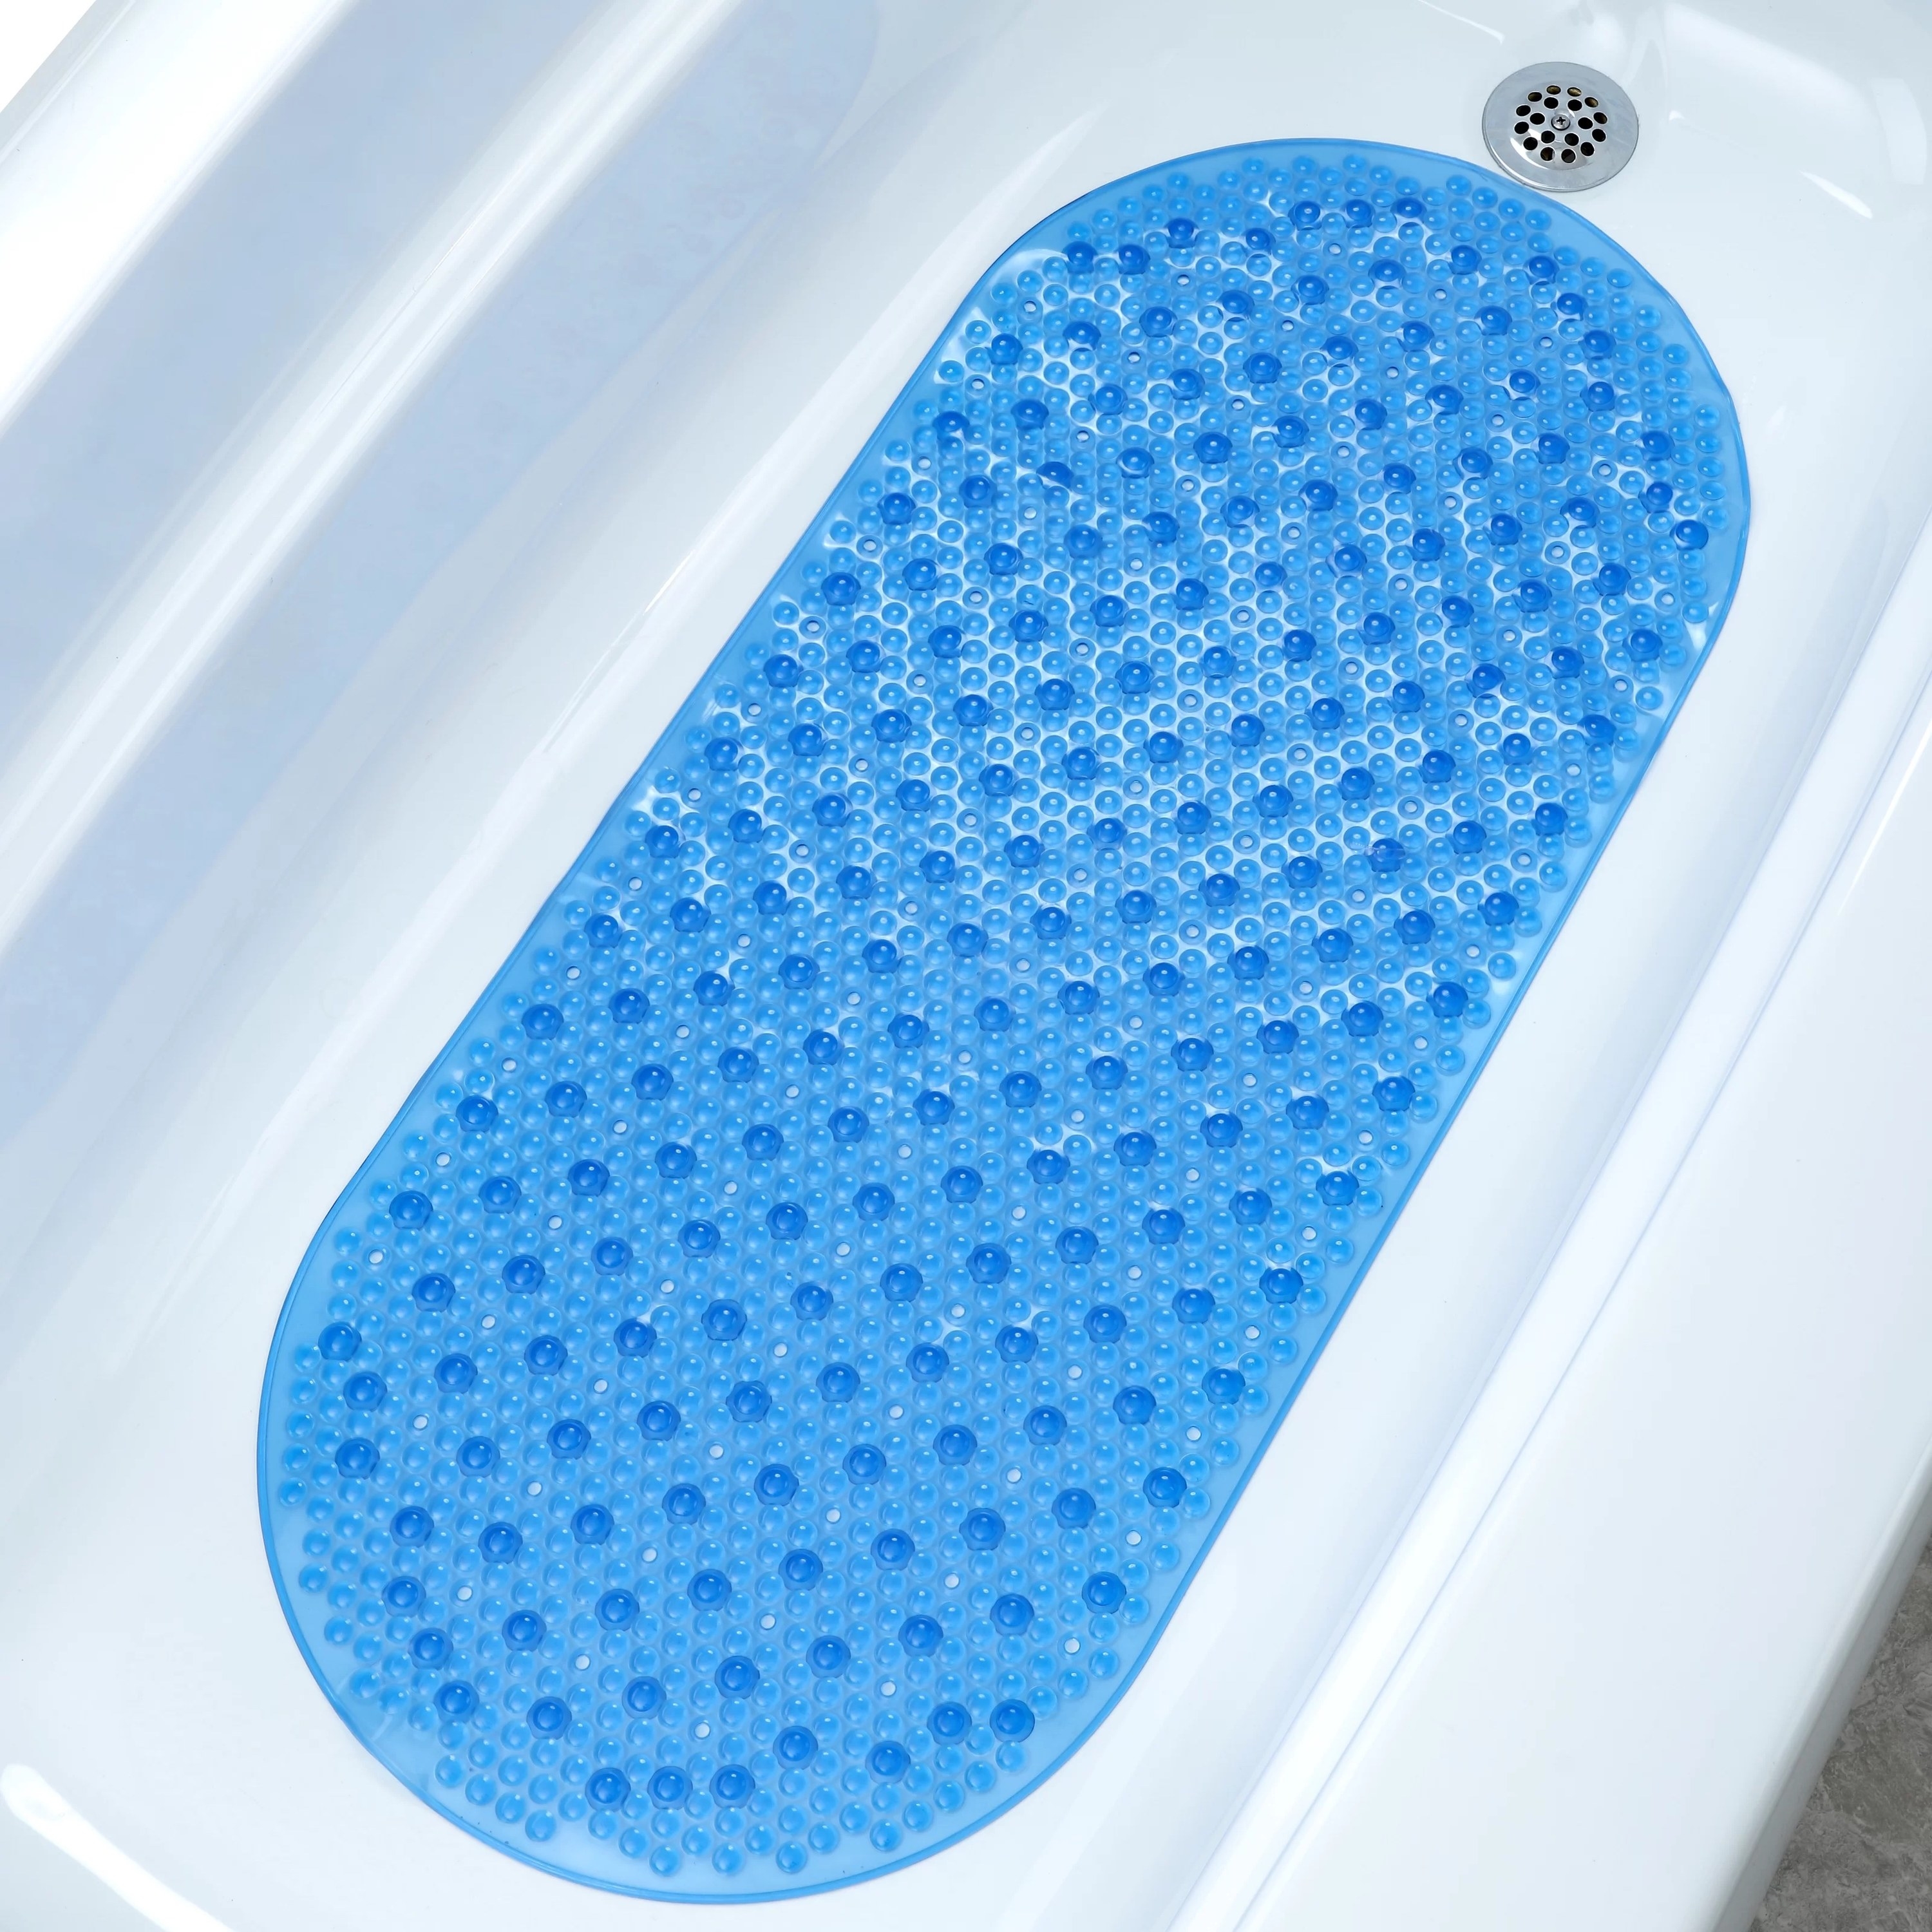 a non-slip shower mat